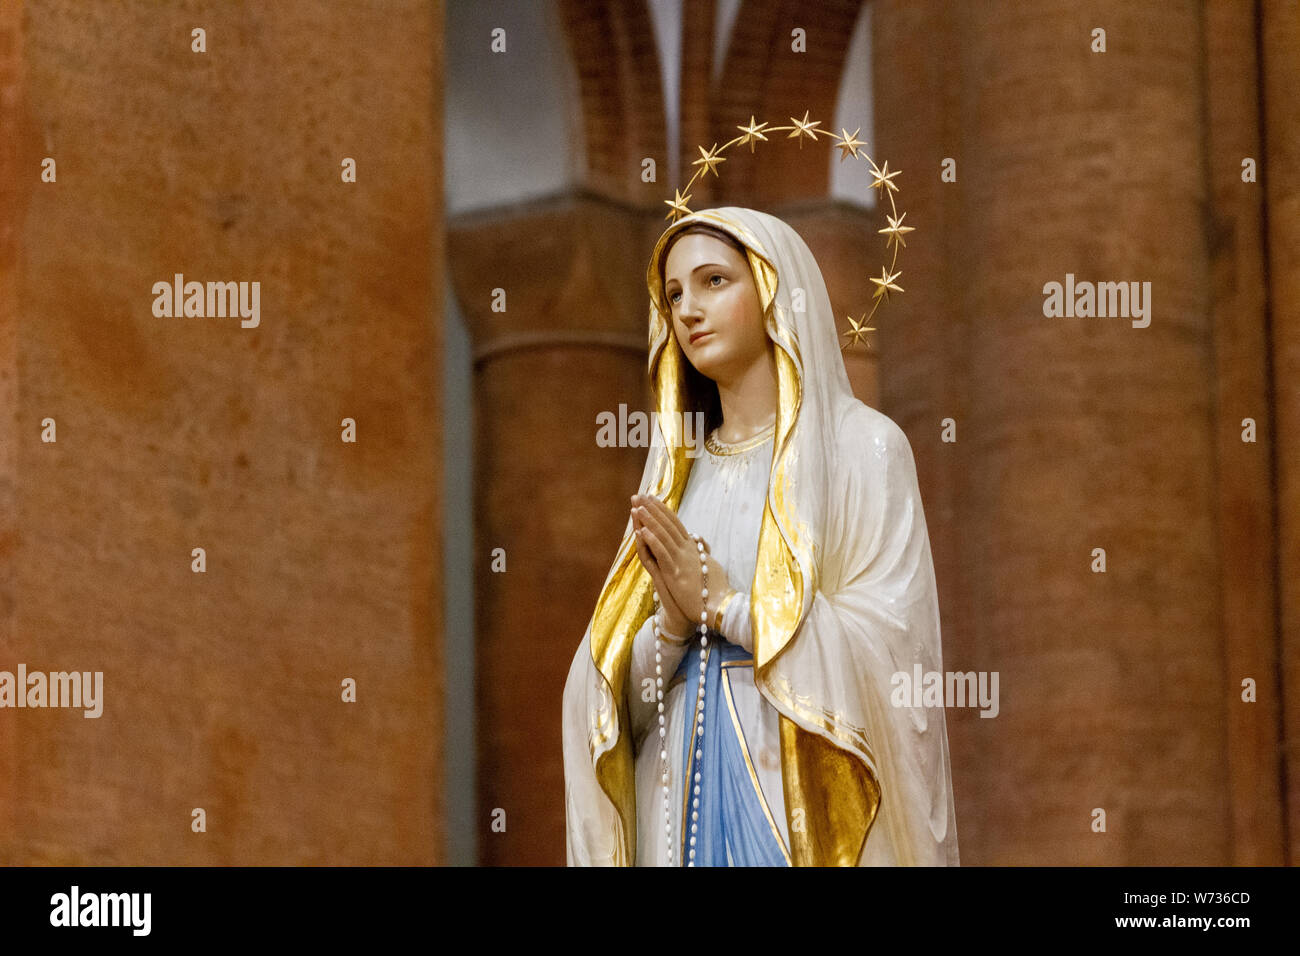 La estatua de Nuestra Señora de Lourdes en el 'Santa Maria del Carmine' (iglesia de Santa María del Carmelo) en Pavia. Foto de stock